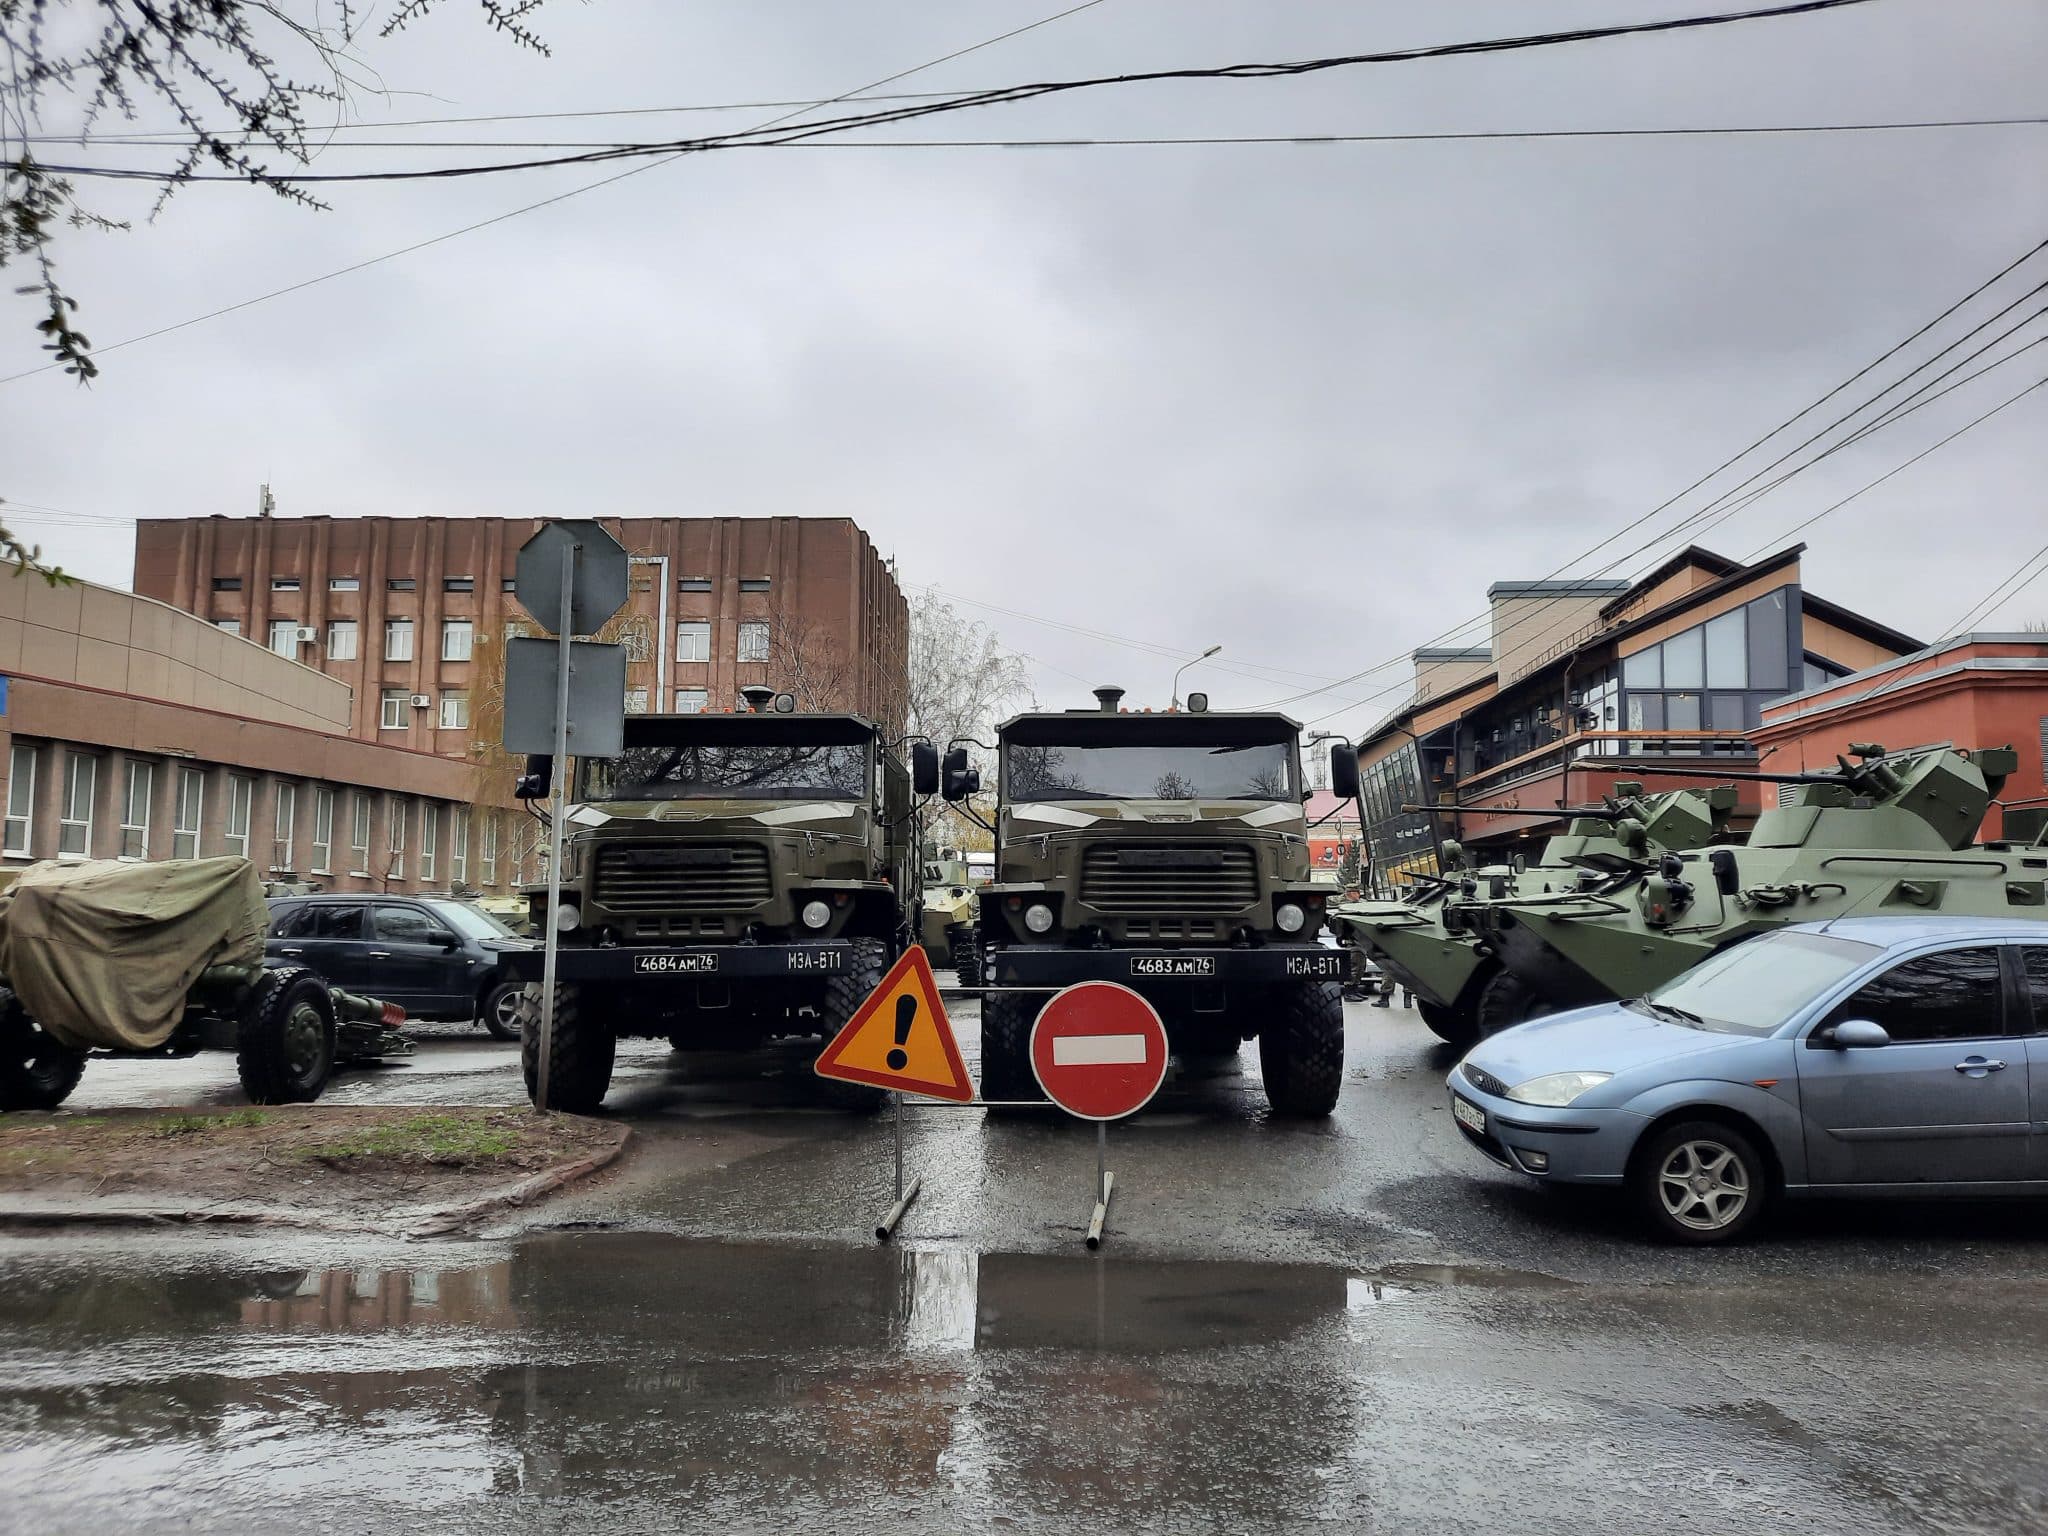 Центр Омска заполонила военная техника - показываем фото